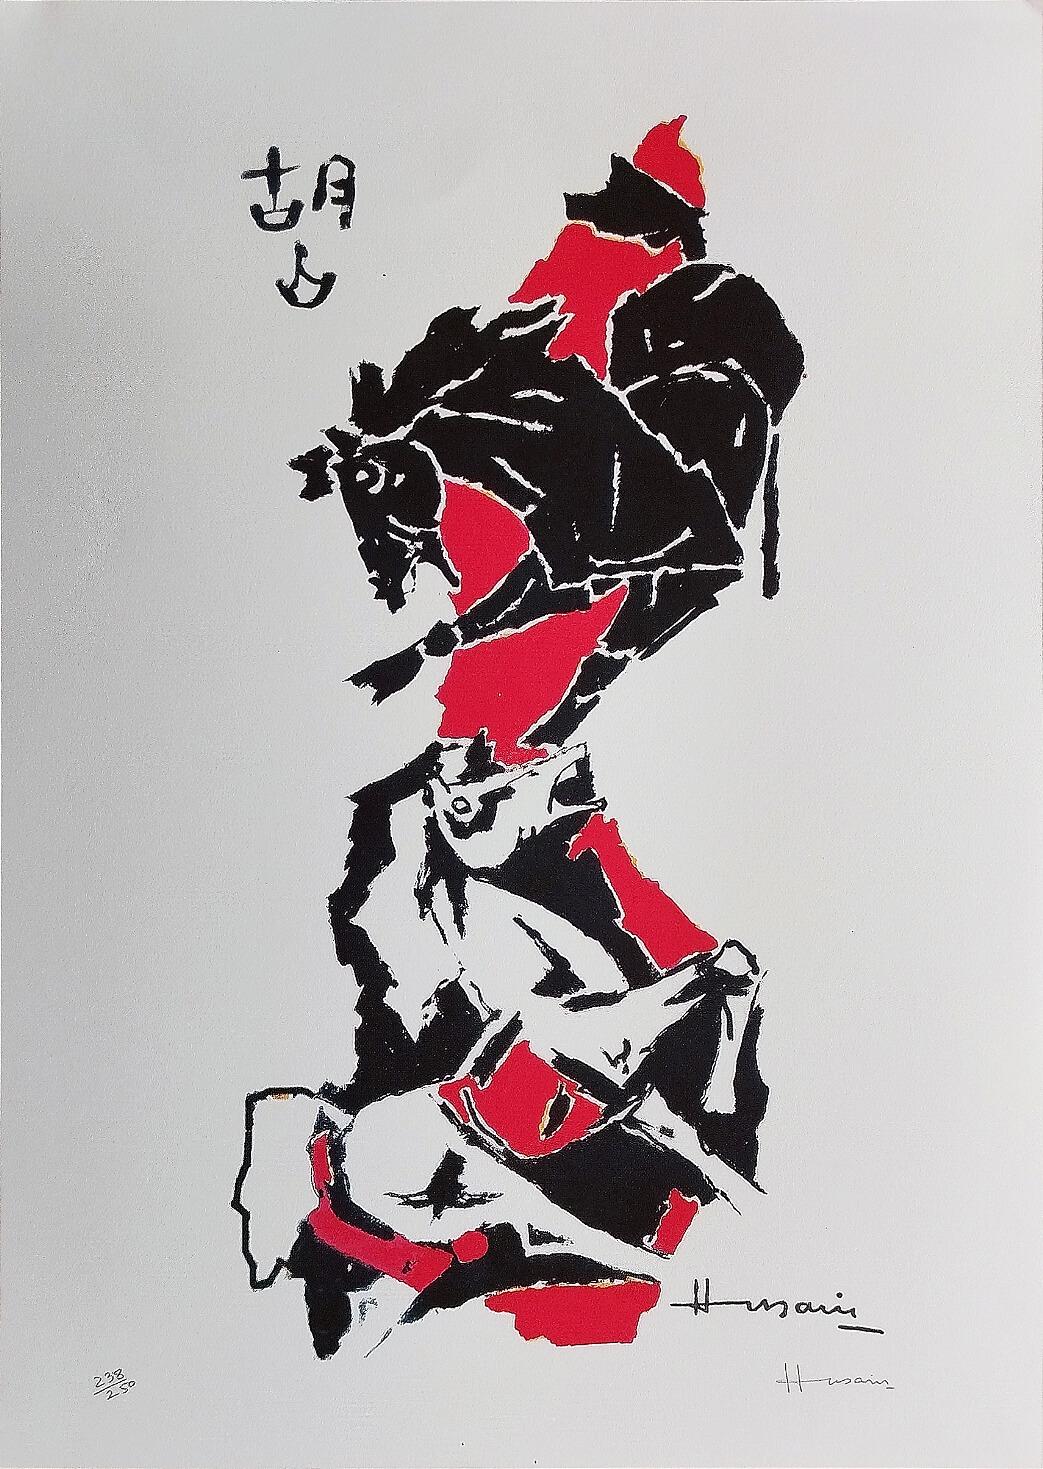 Série de chevaux, sérigraphie sur papier, noir, couleur rouge de l'artiste moderne M.F. Husain